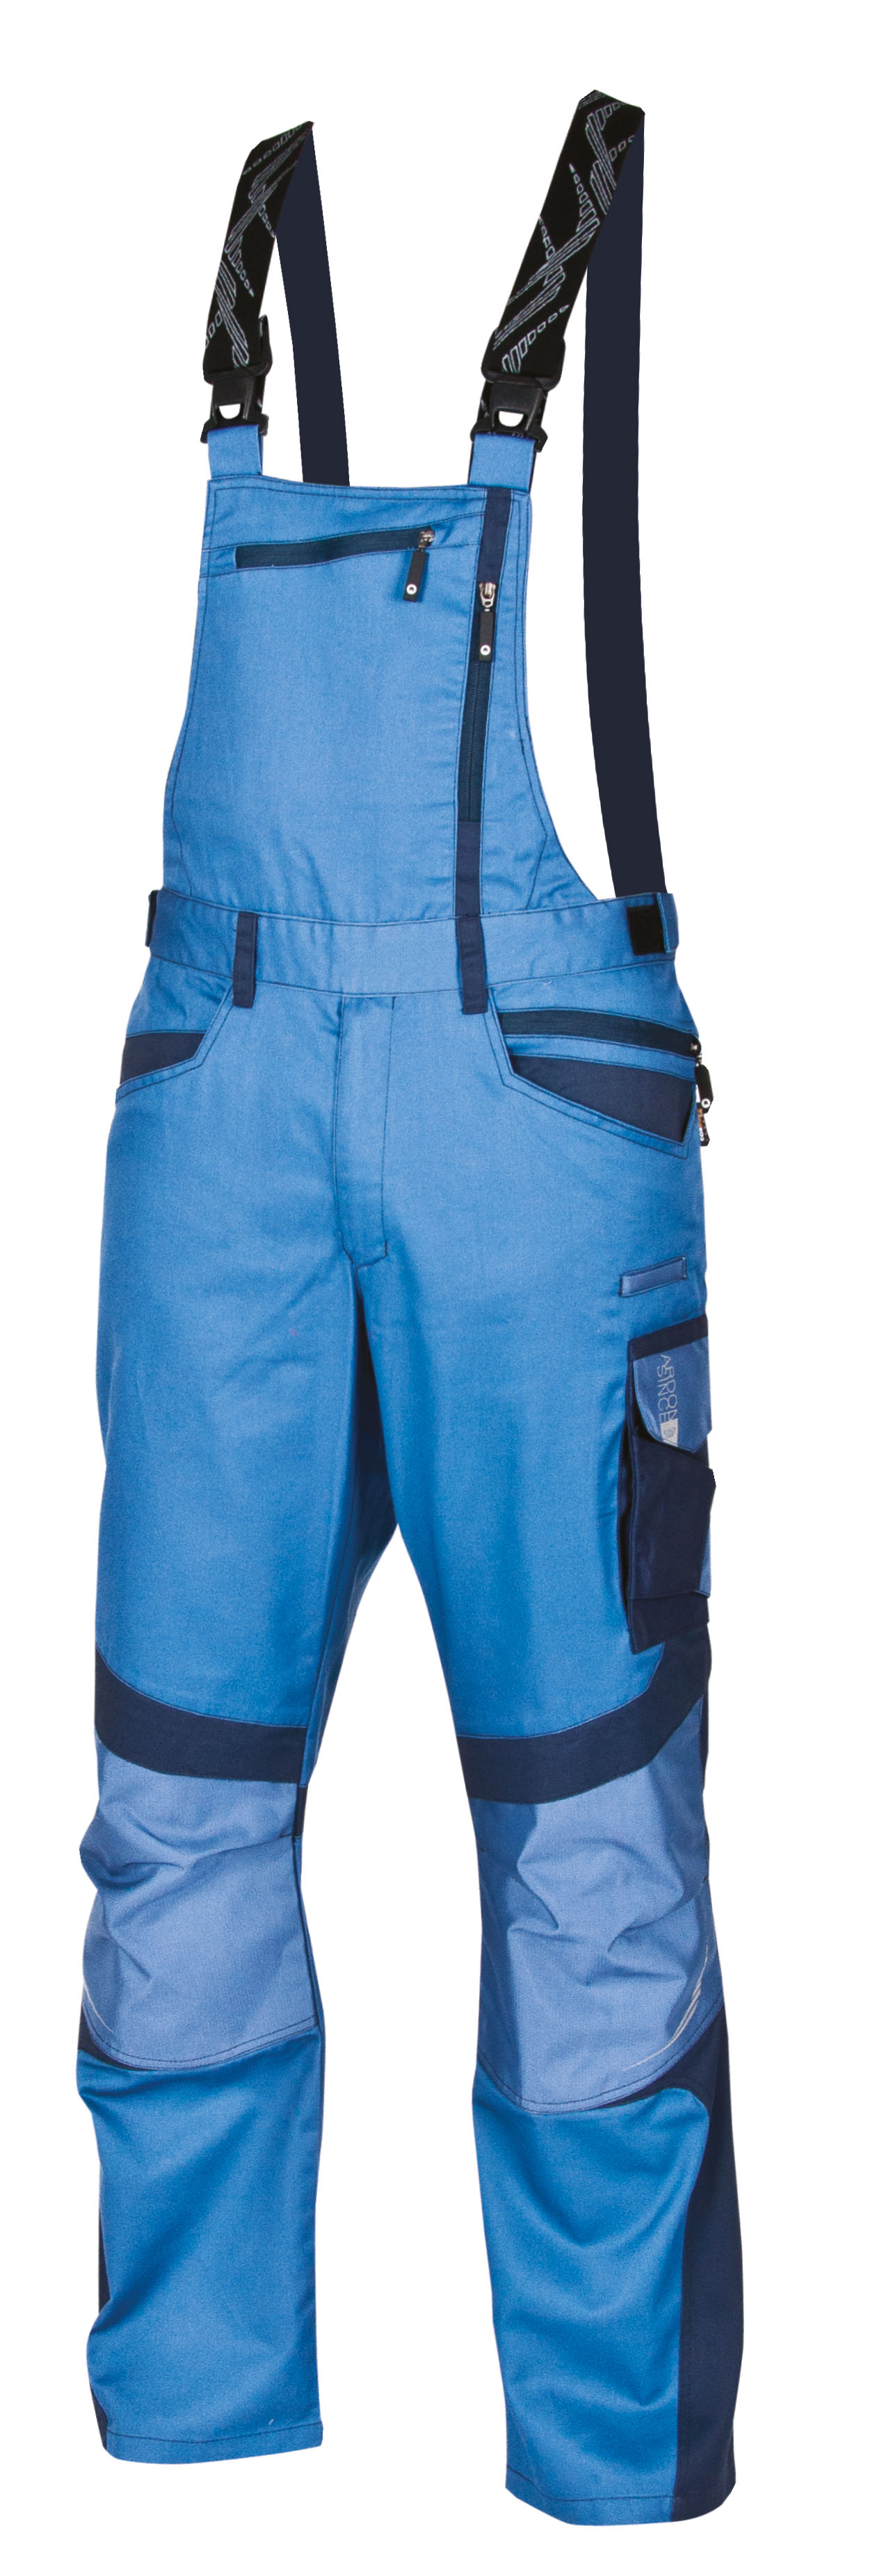 Radne farmer hlače R8ED+ plave, vel. 46-0